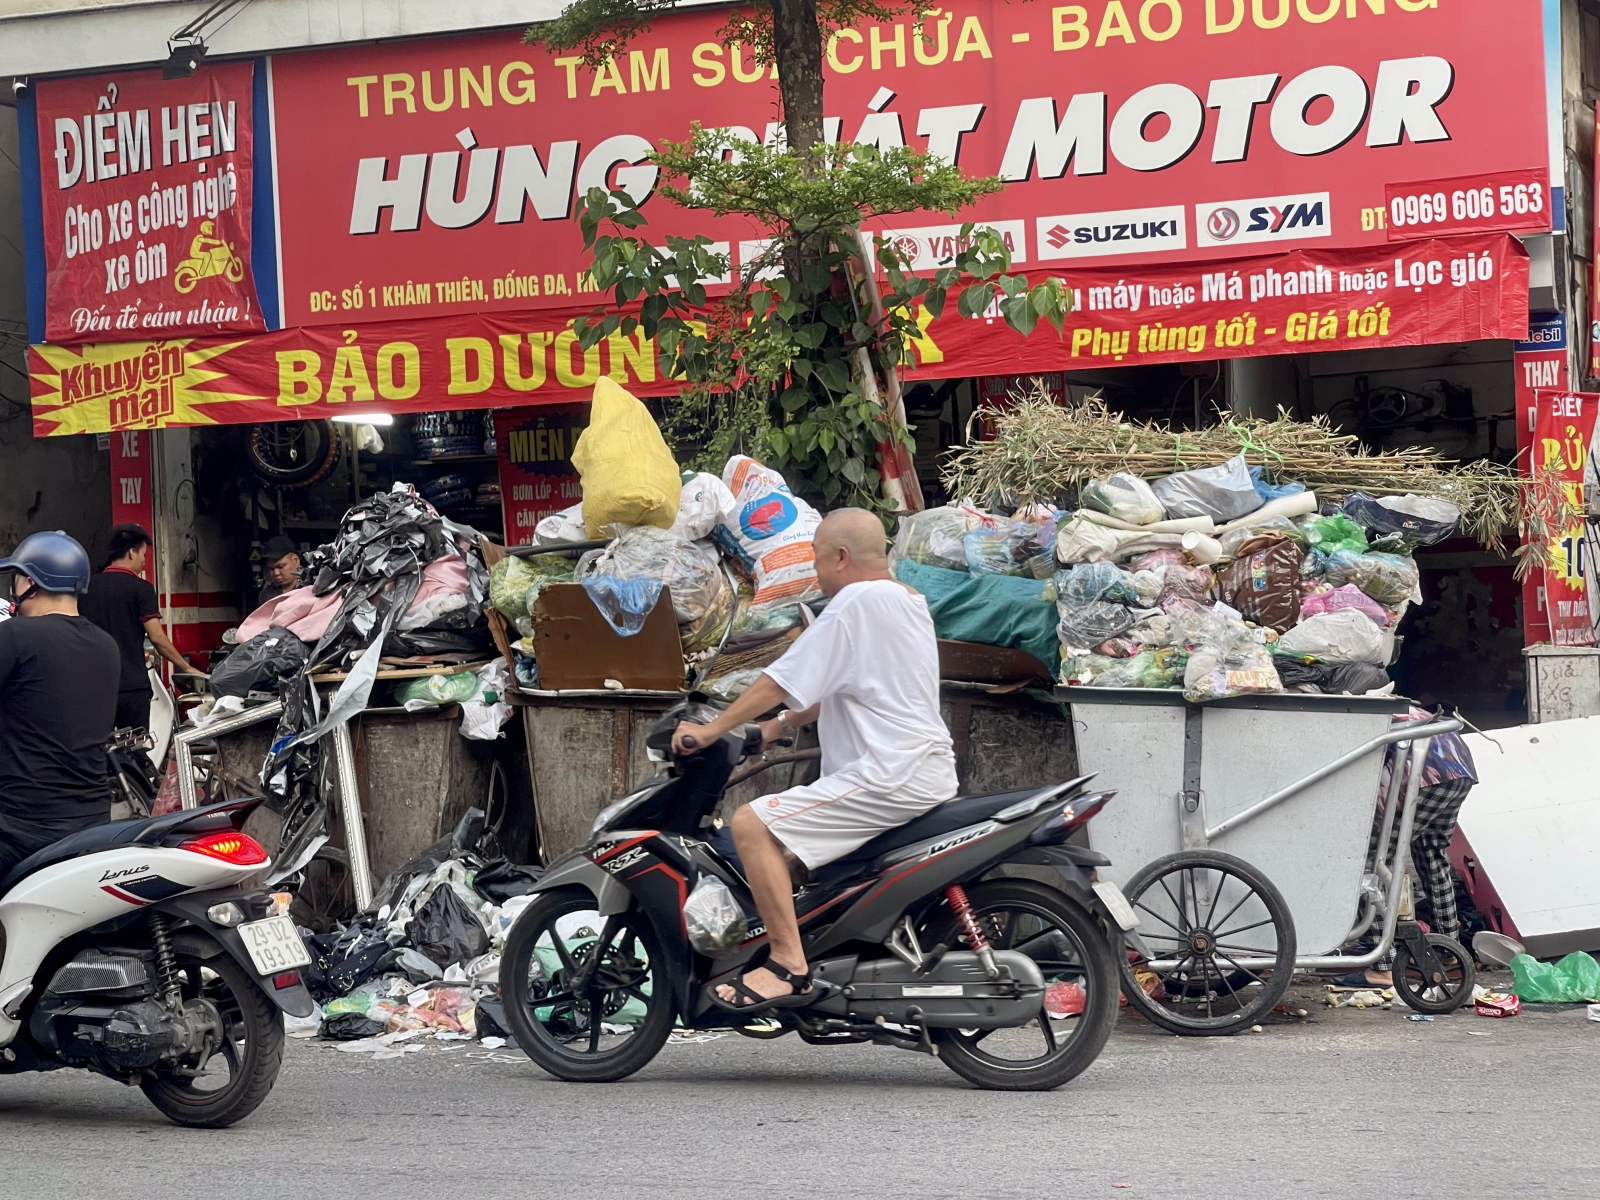 Con phố Khâm Thiên “tắc cứng” vì lưu lượng xe cộ lớn, nhưng diện tích lòng đường còn khiêm tốn, vậy mà vẫn có hàng loạt xe rác lấn chiếm đến 1/4 lòng đường.